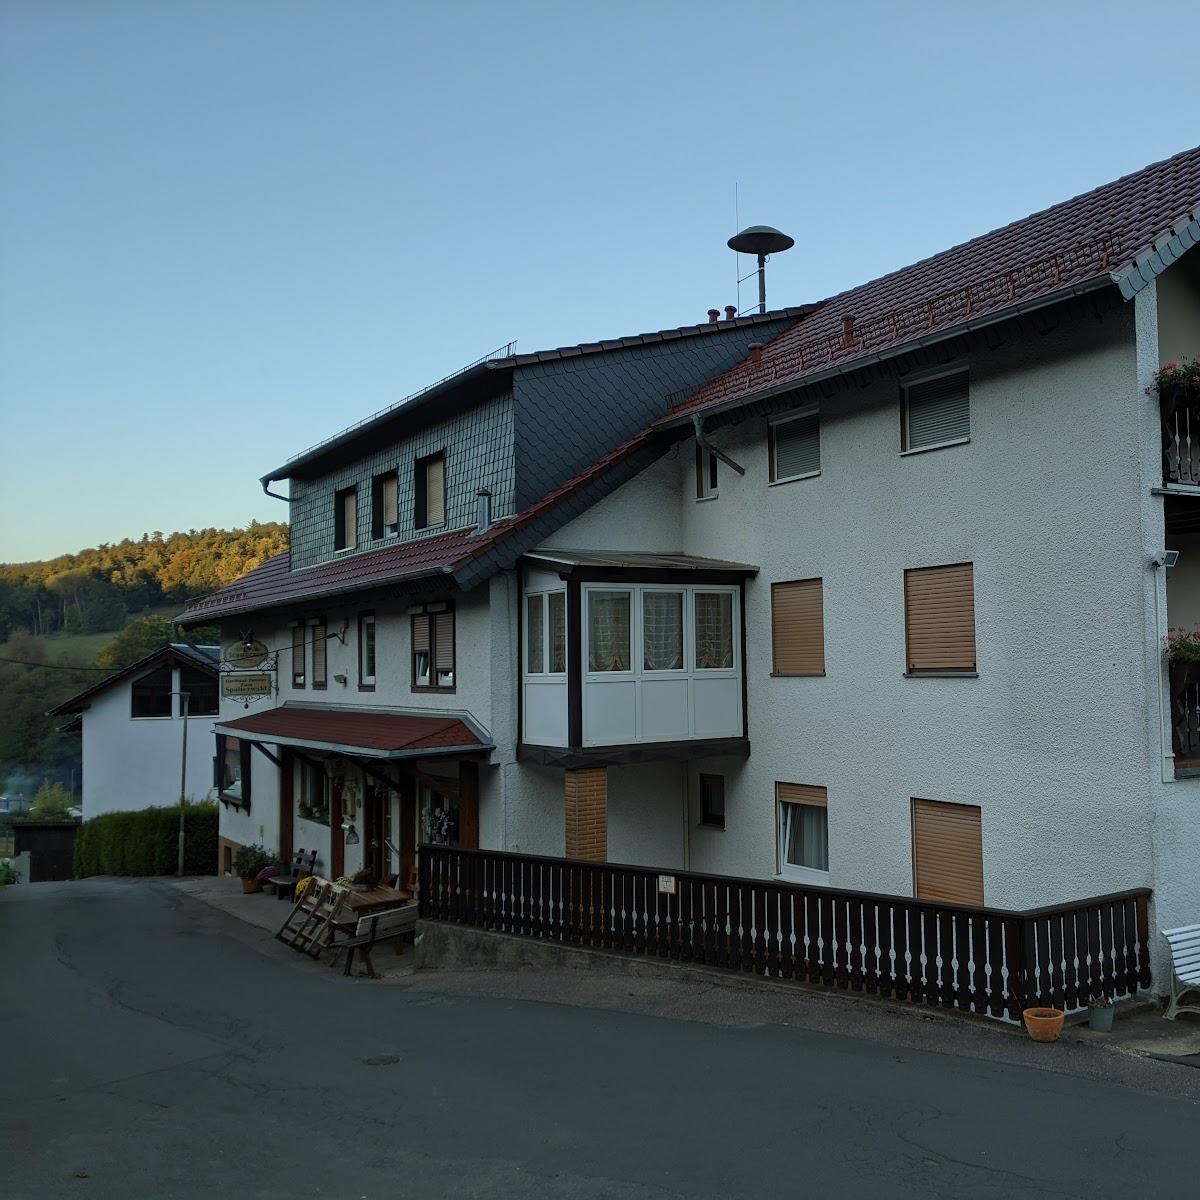 Restaurant "Zum Spälterwald" in Oberzent